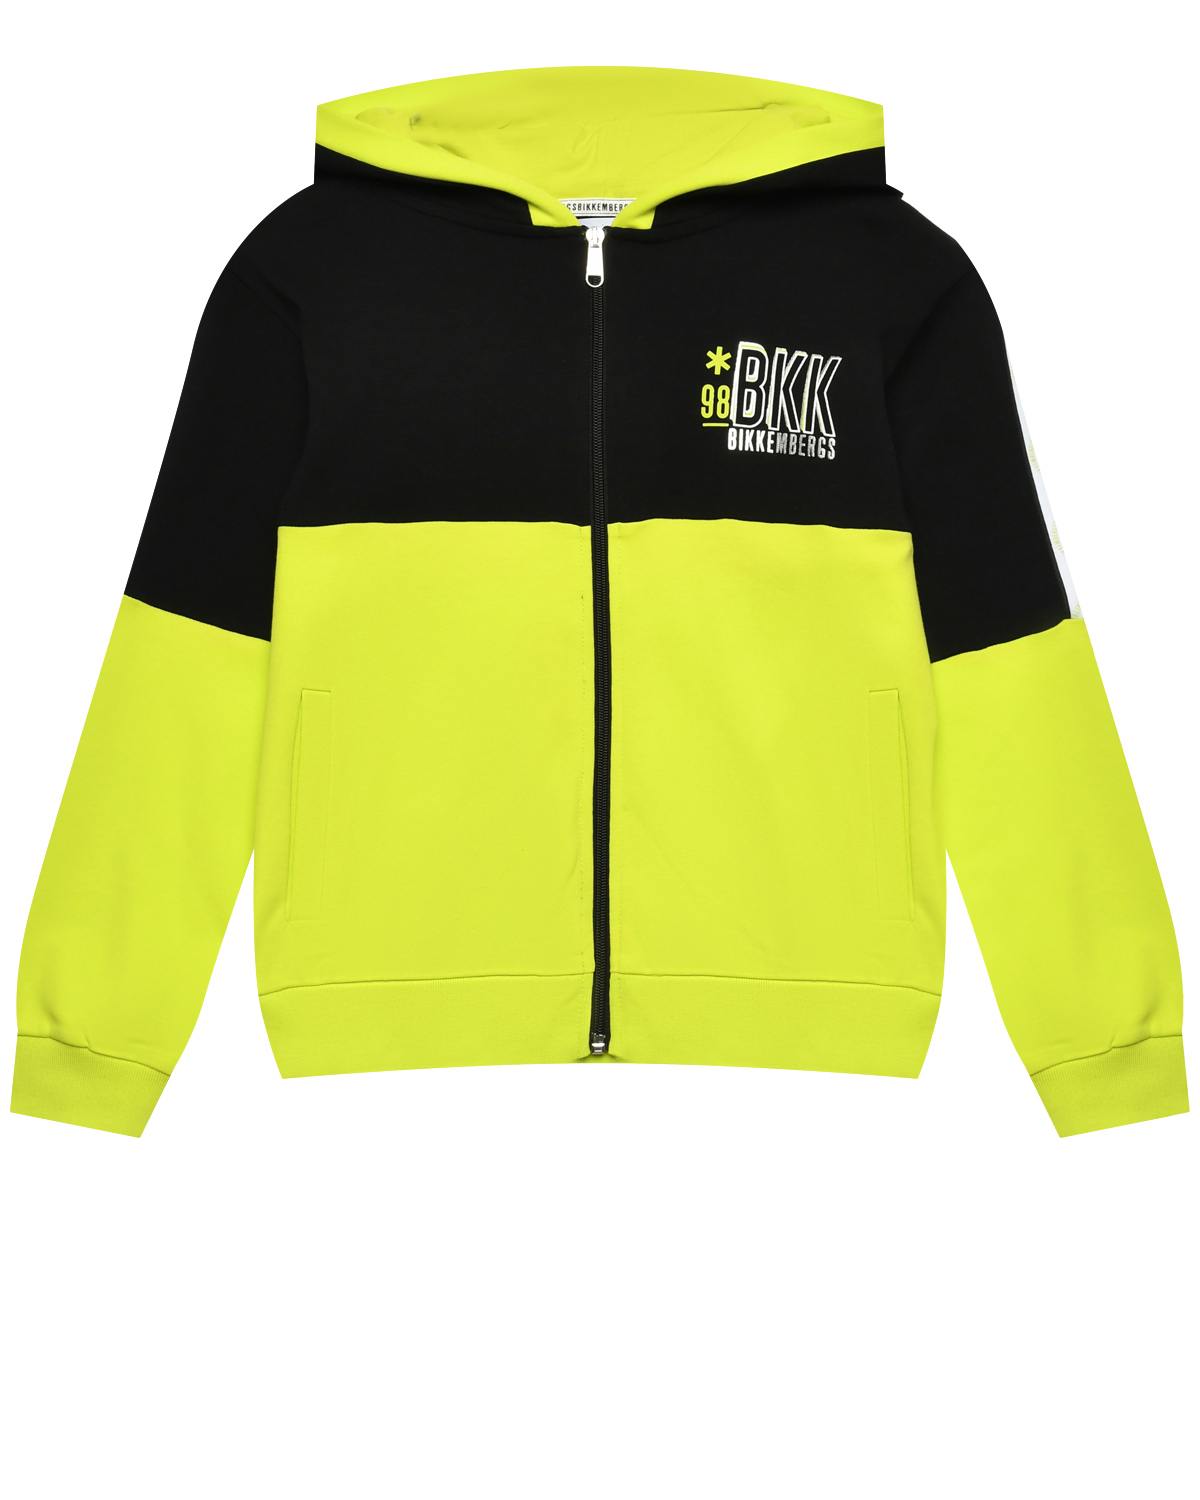 Куртка спортивная с капюшоном и логотипом, желтая Bikkembergs, размер 164, цвет нет цвета